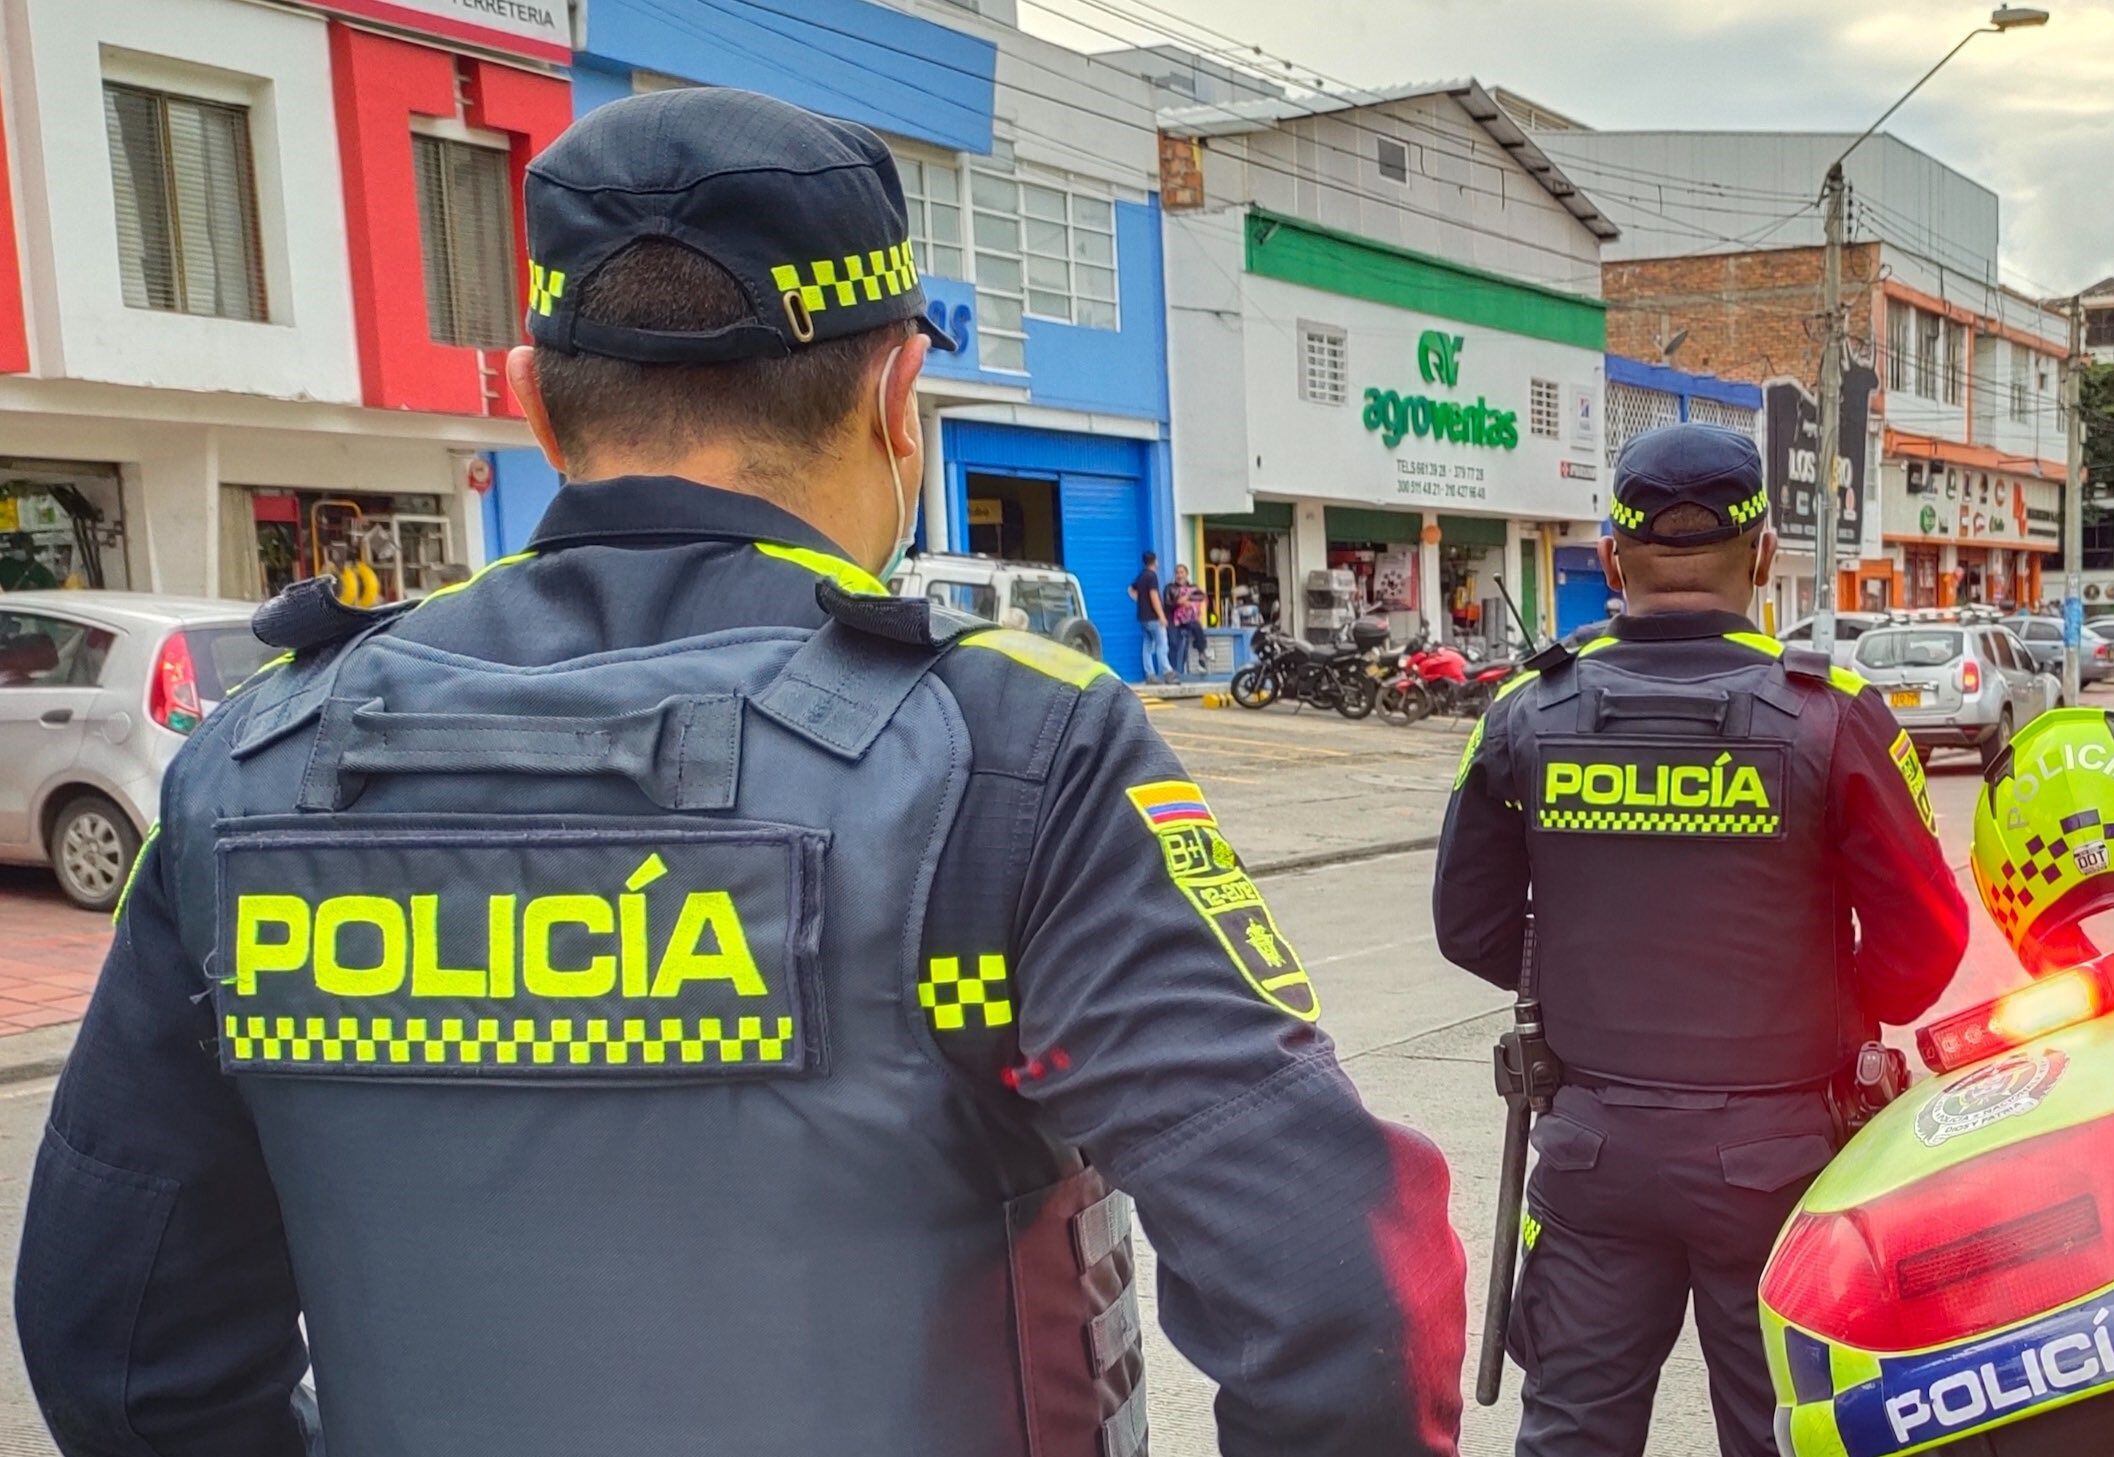 Cuatro agentes de policía fueron  detenidos por su presunta implicación en el asesinato de Cristian Herrera Zúñiga, tras actos de tortura en una estación policial - crédito Policía Nacional de Colombia 